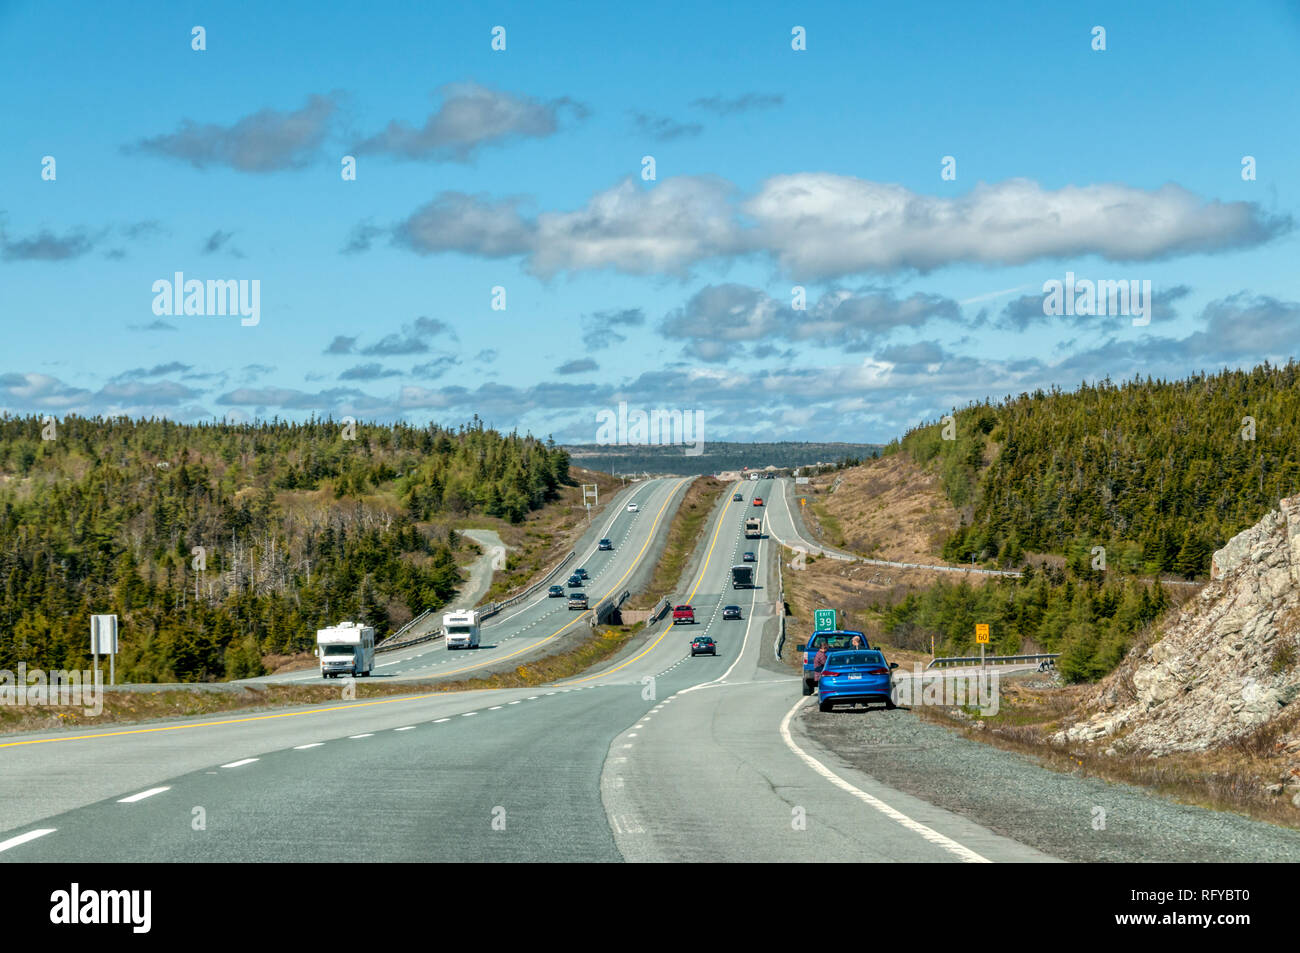 La Trans-Canada Highway in Terranova sulla costa est del Canada. Viaggia 4,860 miglia attraverso tutte le province di west coast. Foto Stock